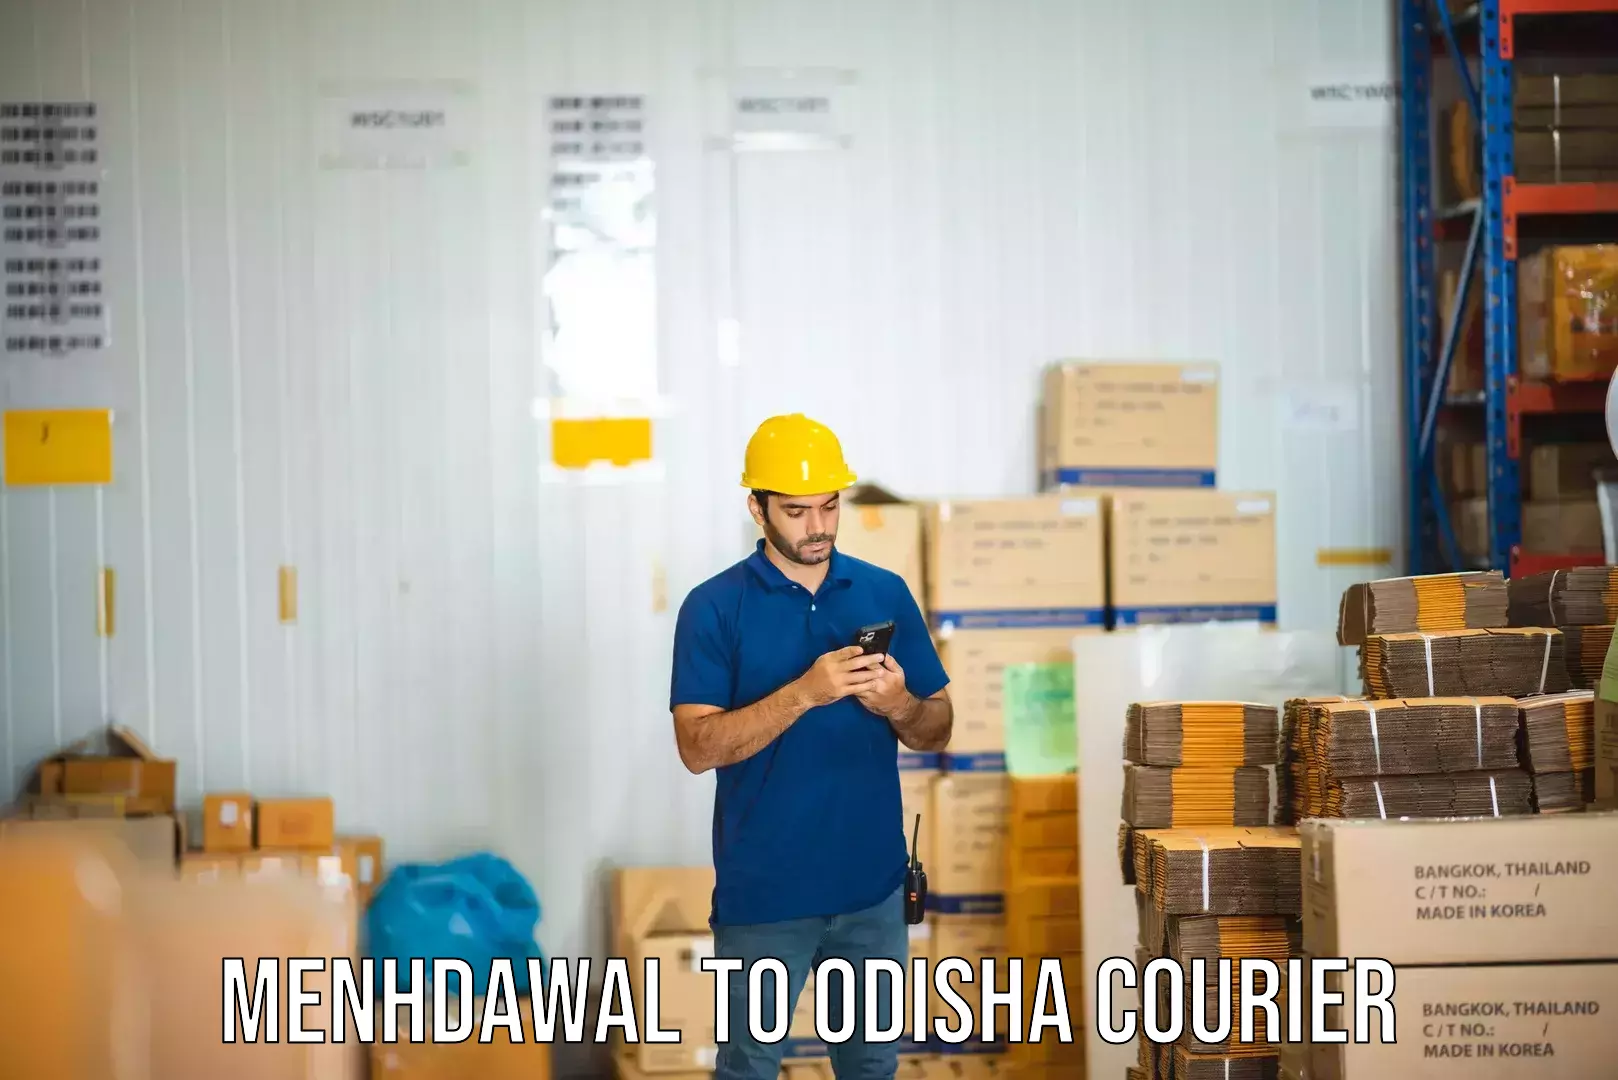 Tech-enabled shipping Menhdawal to Boipariguda